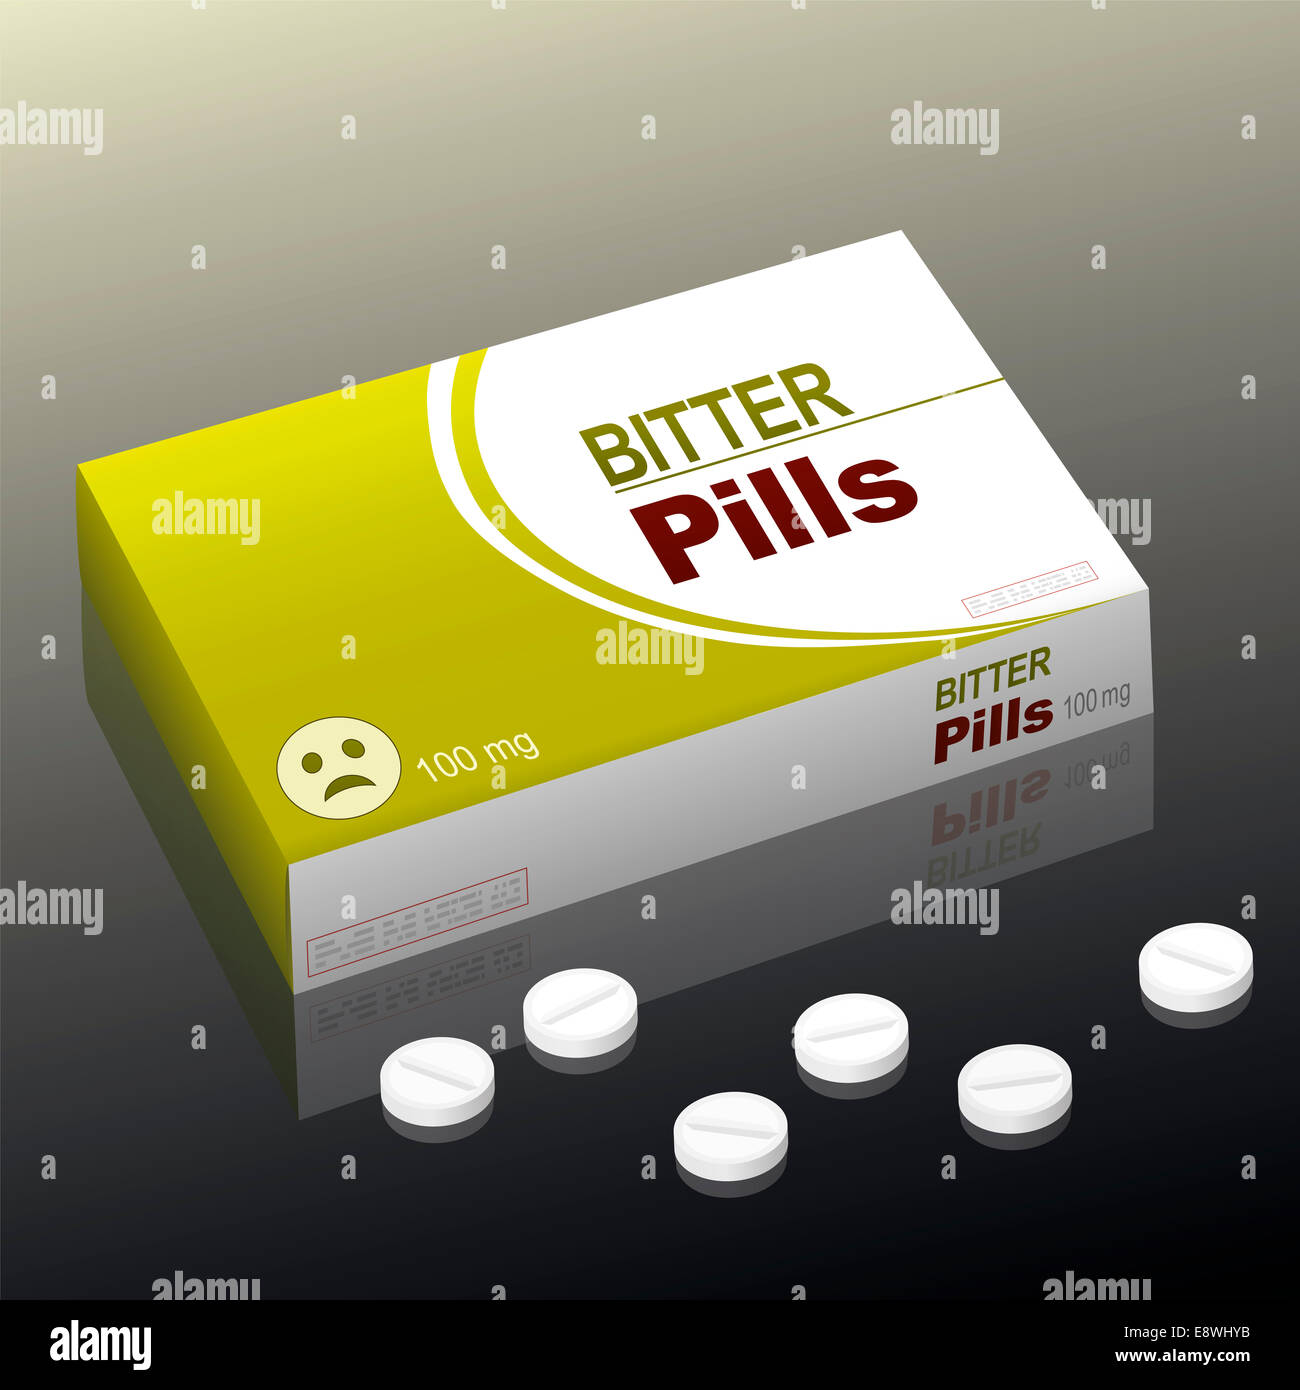 Tabletten, bittere Pillen mit einem traurigen Smiley als Markenlogo auf der Karton Verpackung genannt. Stockfoto